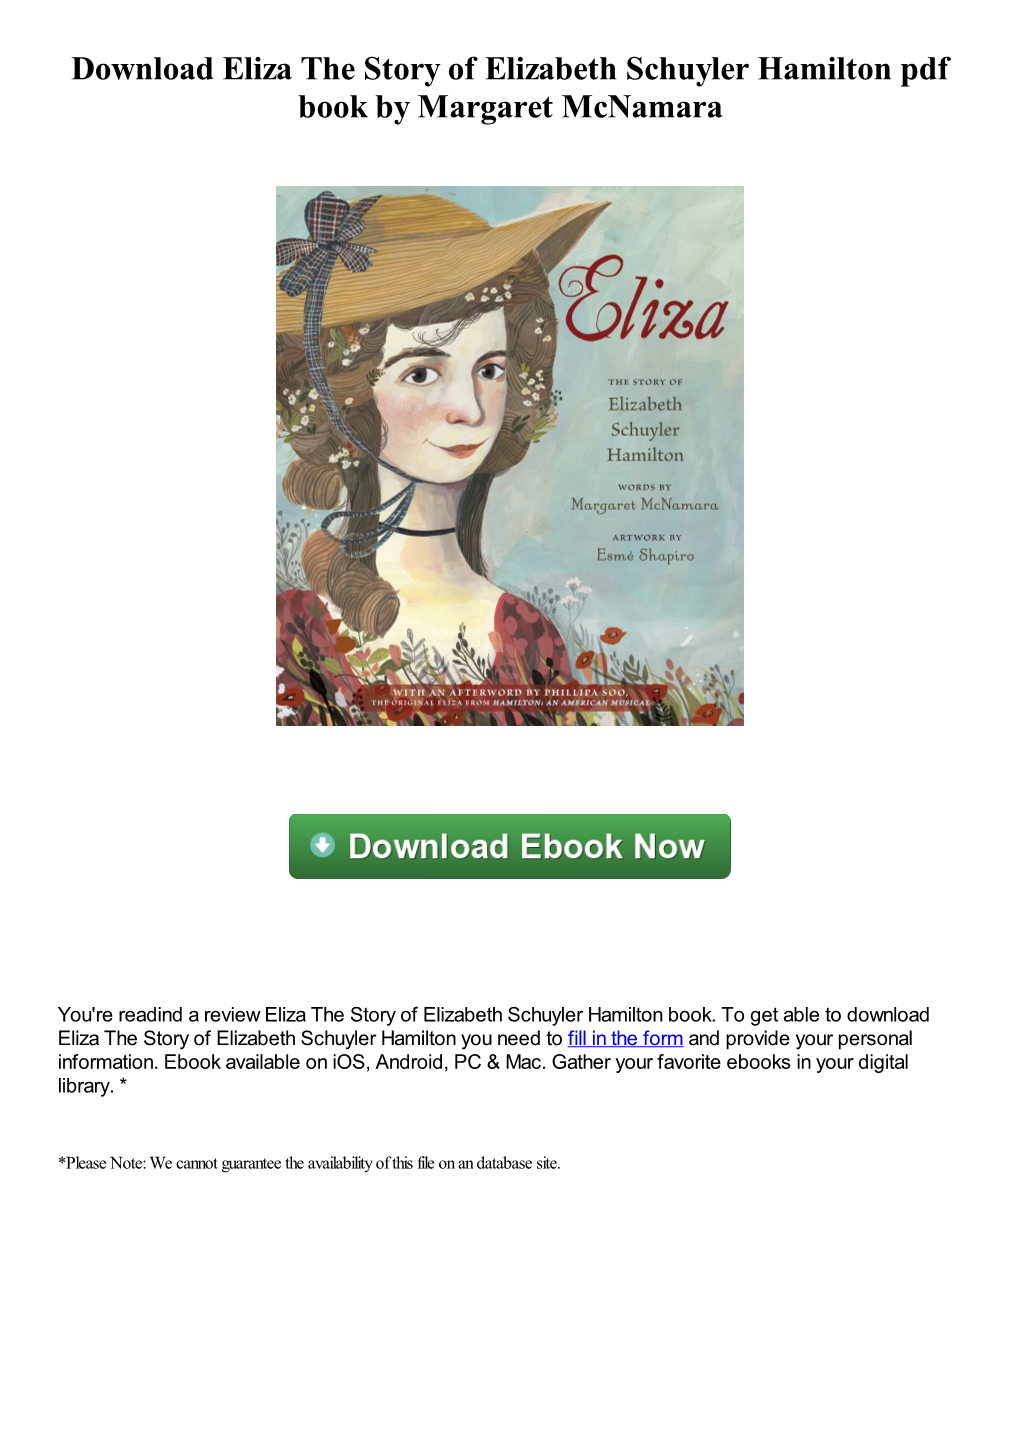 Download Eliza the Story of Elizabeth Schuyler Hamilton Pdf Book by Margaret Mcnamara